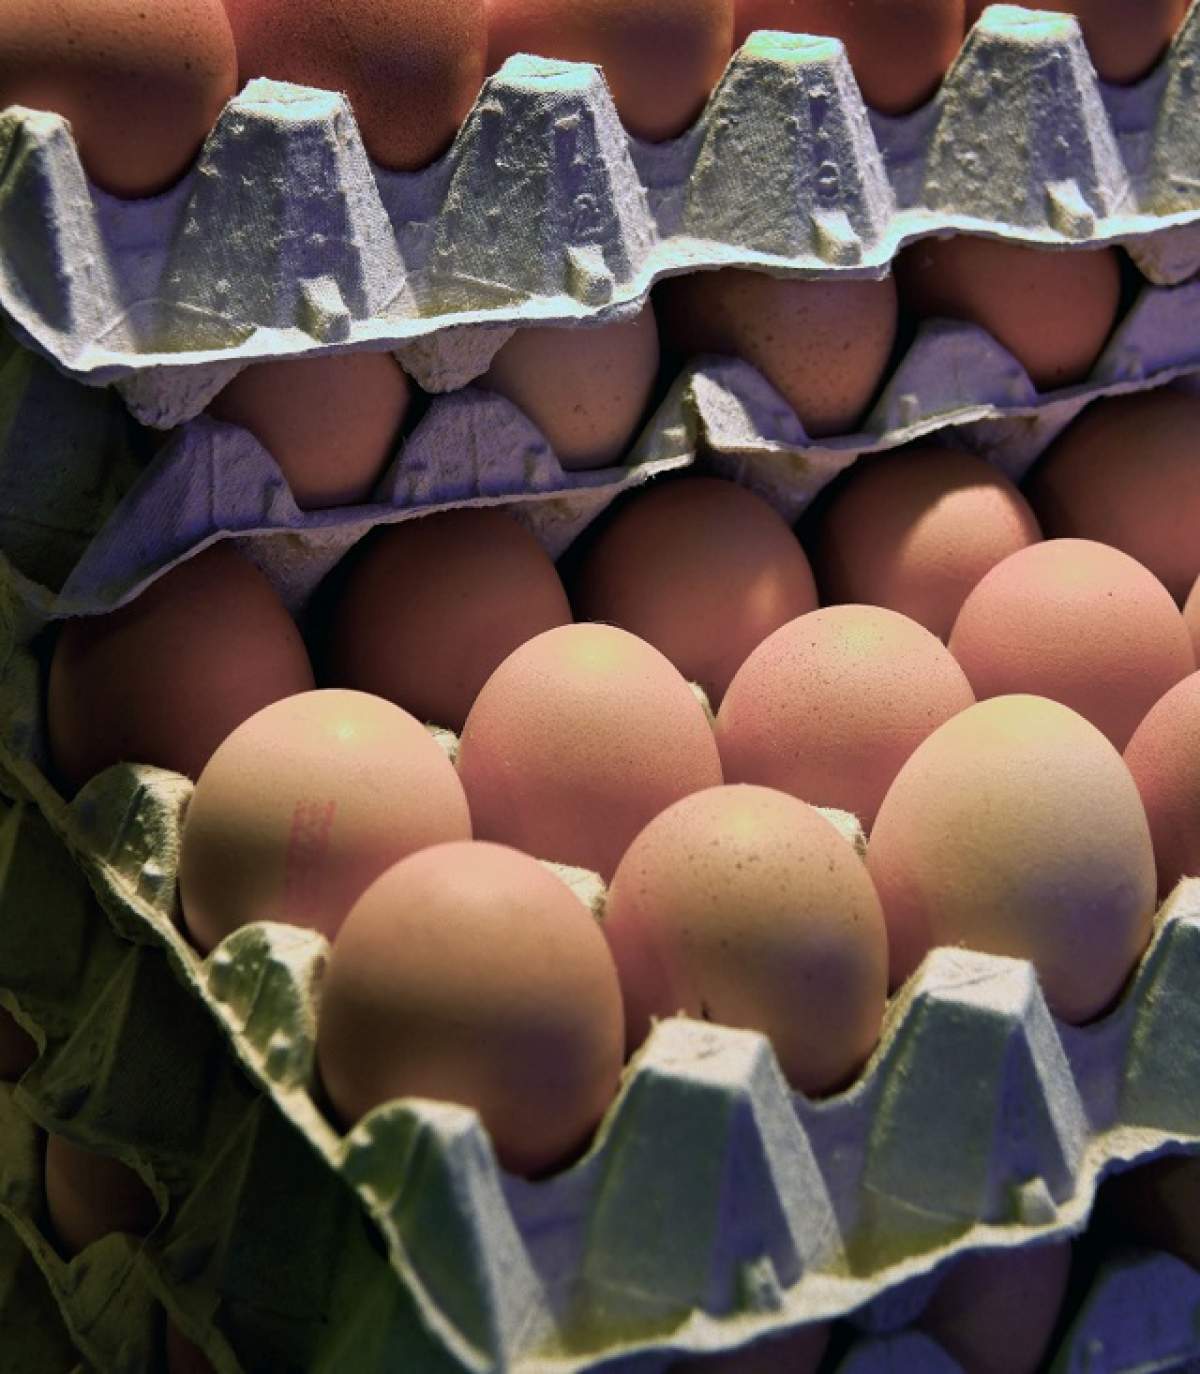 ÎNTREBAREA ZILEI - MIERCURI: Ce se întâmplă cu corpul tău dacă mănânci trei ouă pe săptămână?